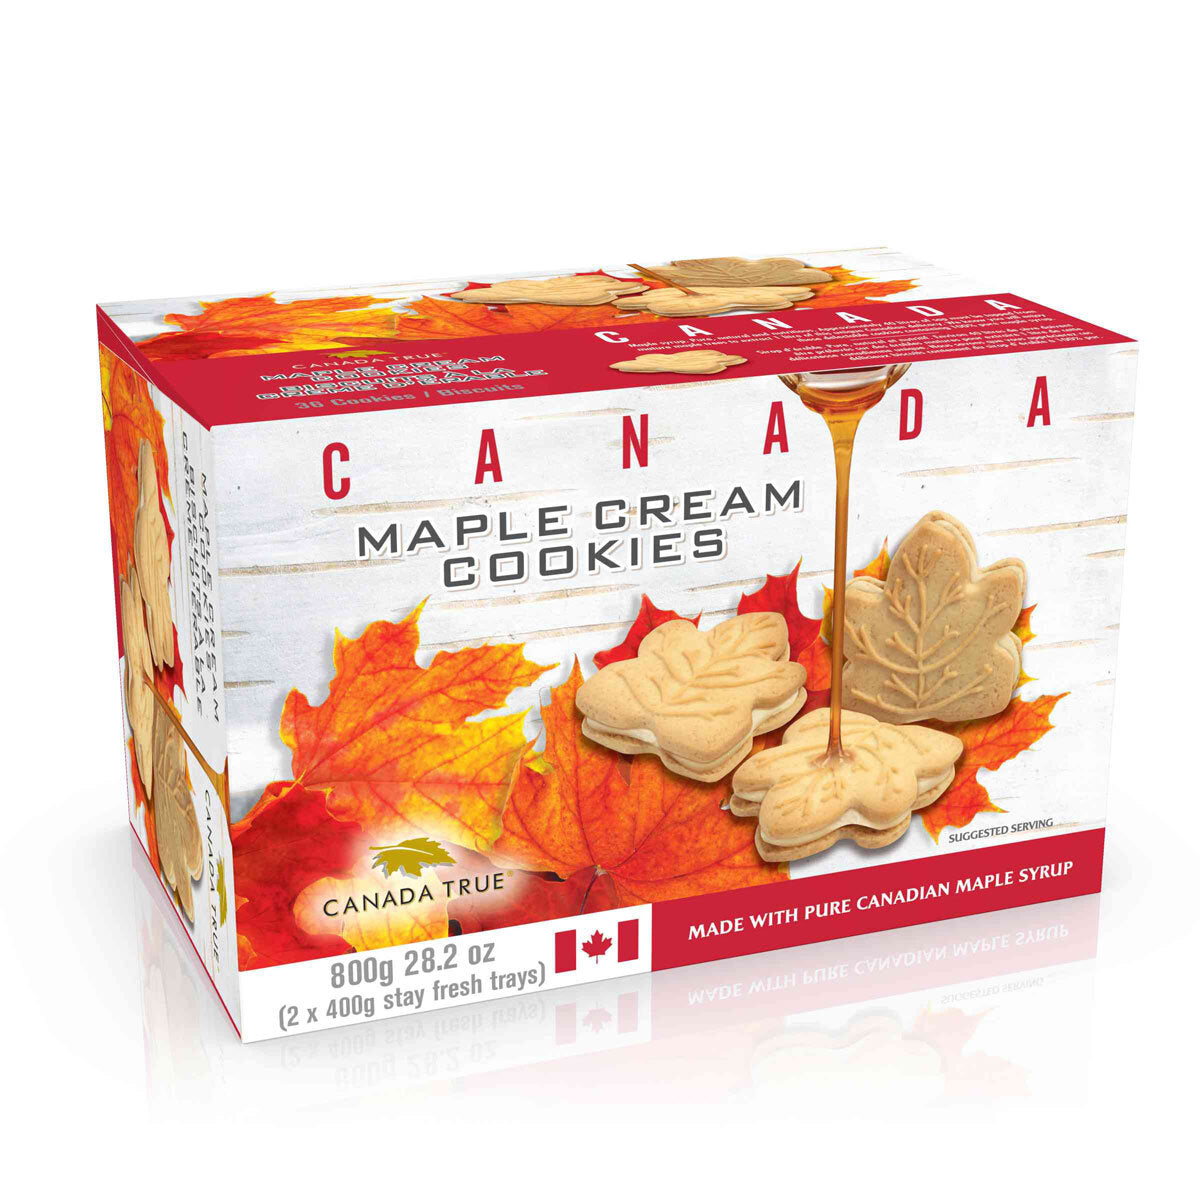 Canada Maple Cream Cookies - 800g